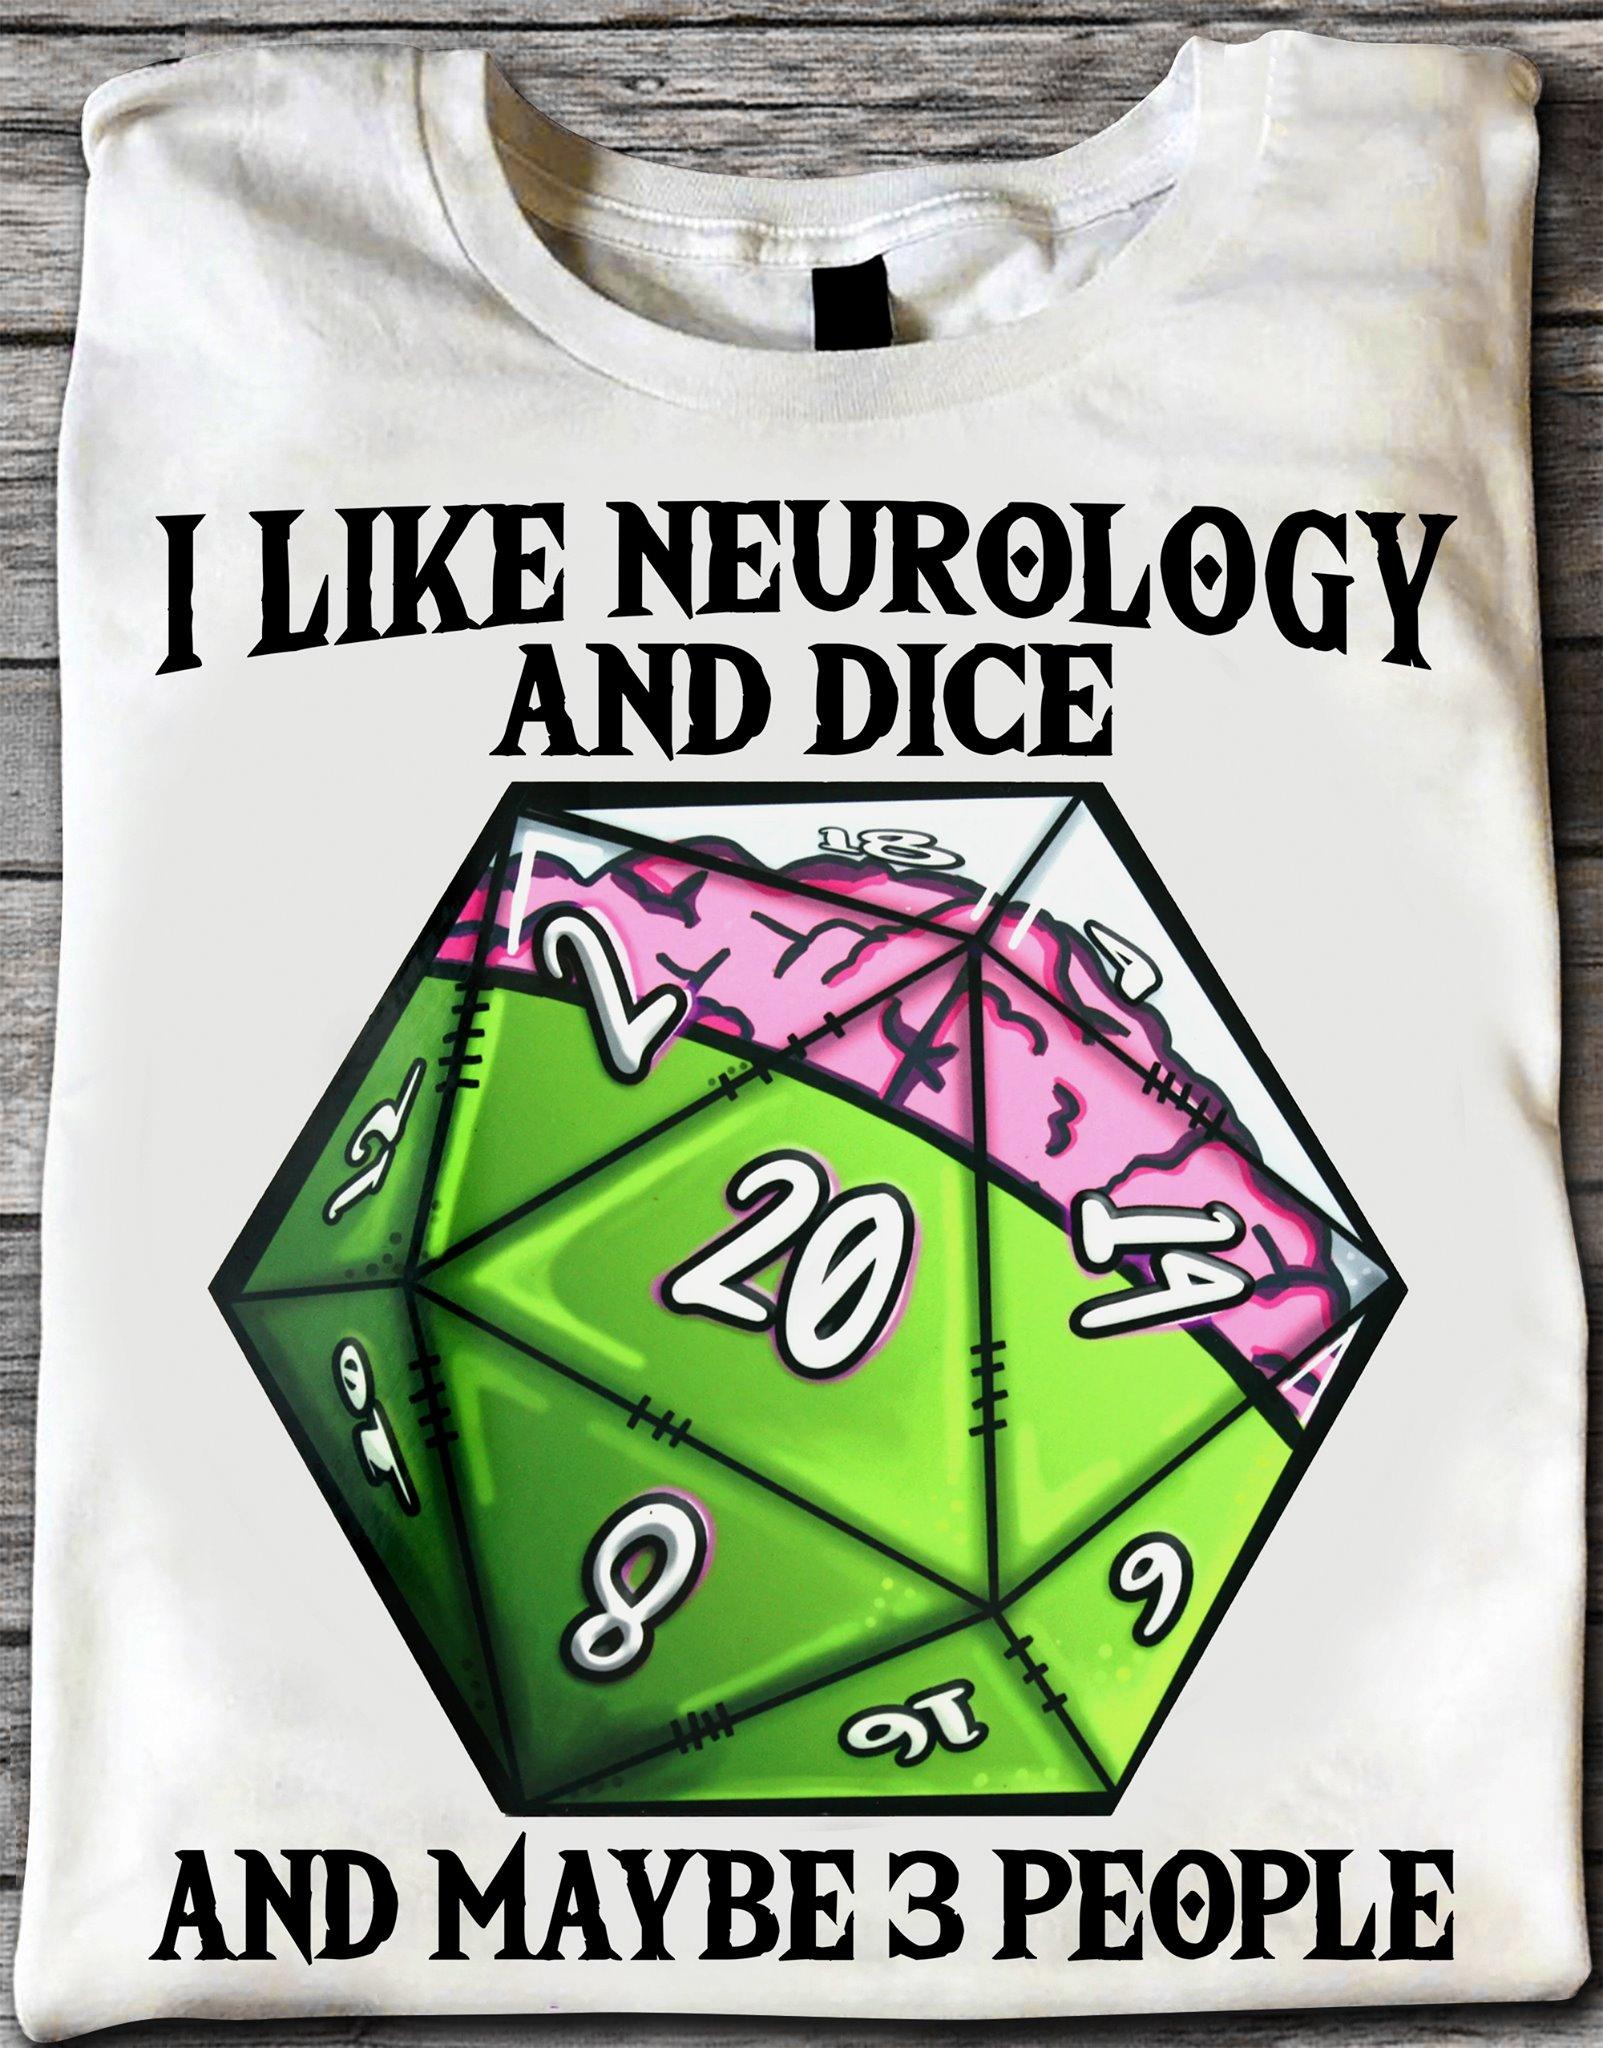 Neurology Dice - I like neurology and dice and maybe 3 people